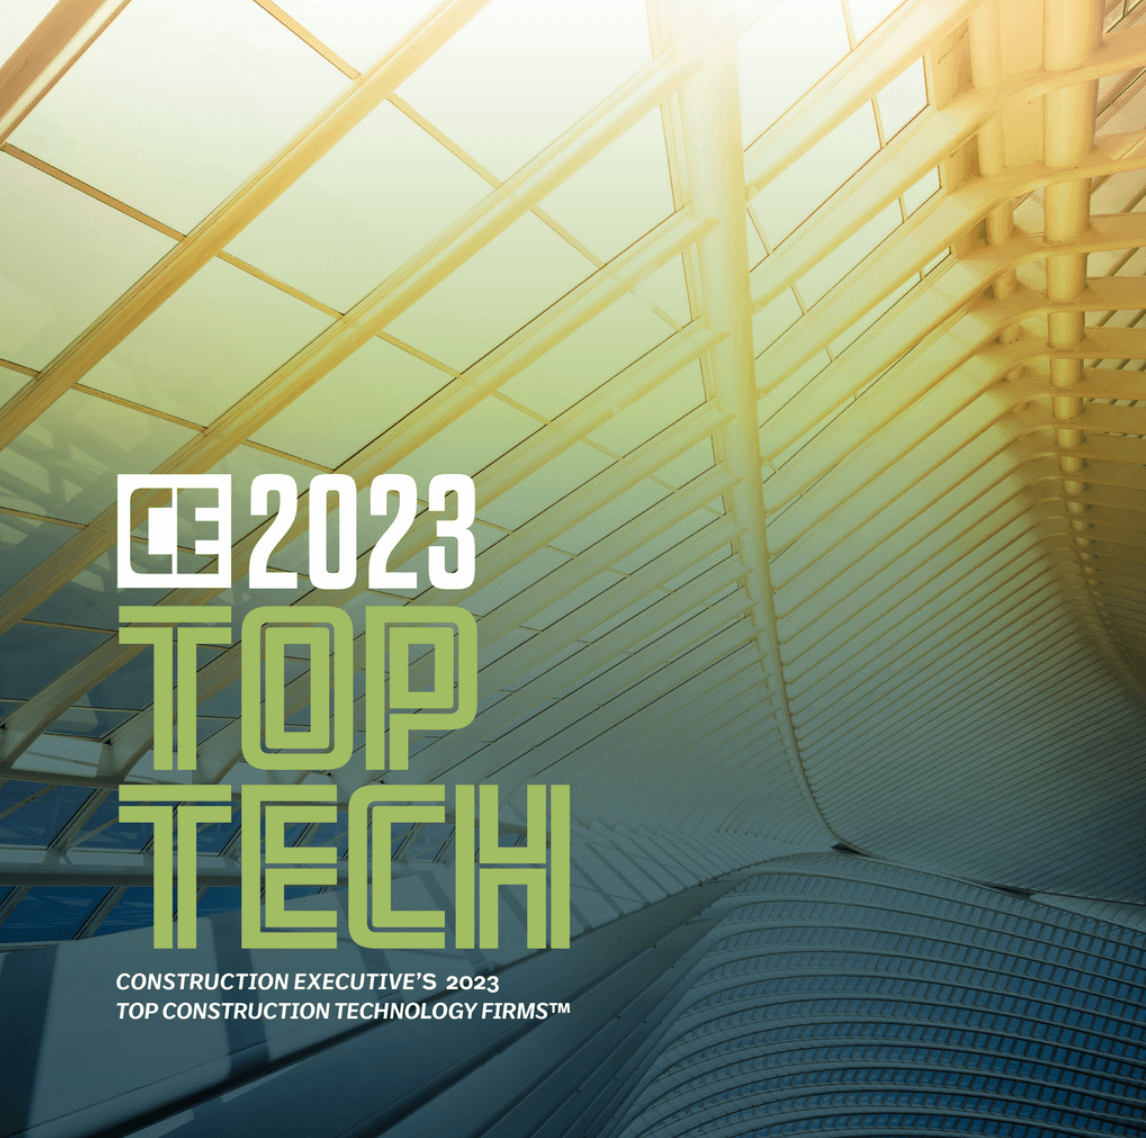 Construction Executive 2023 Top Tech Nomination